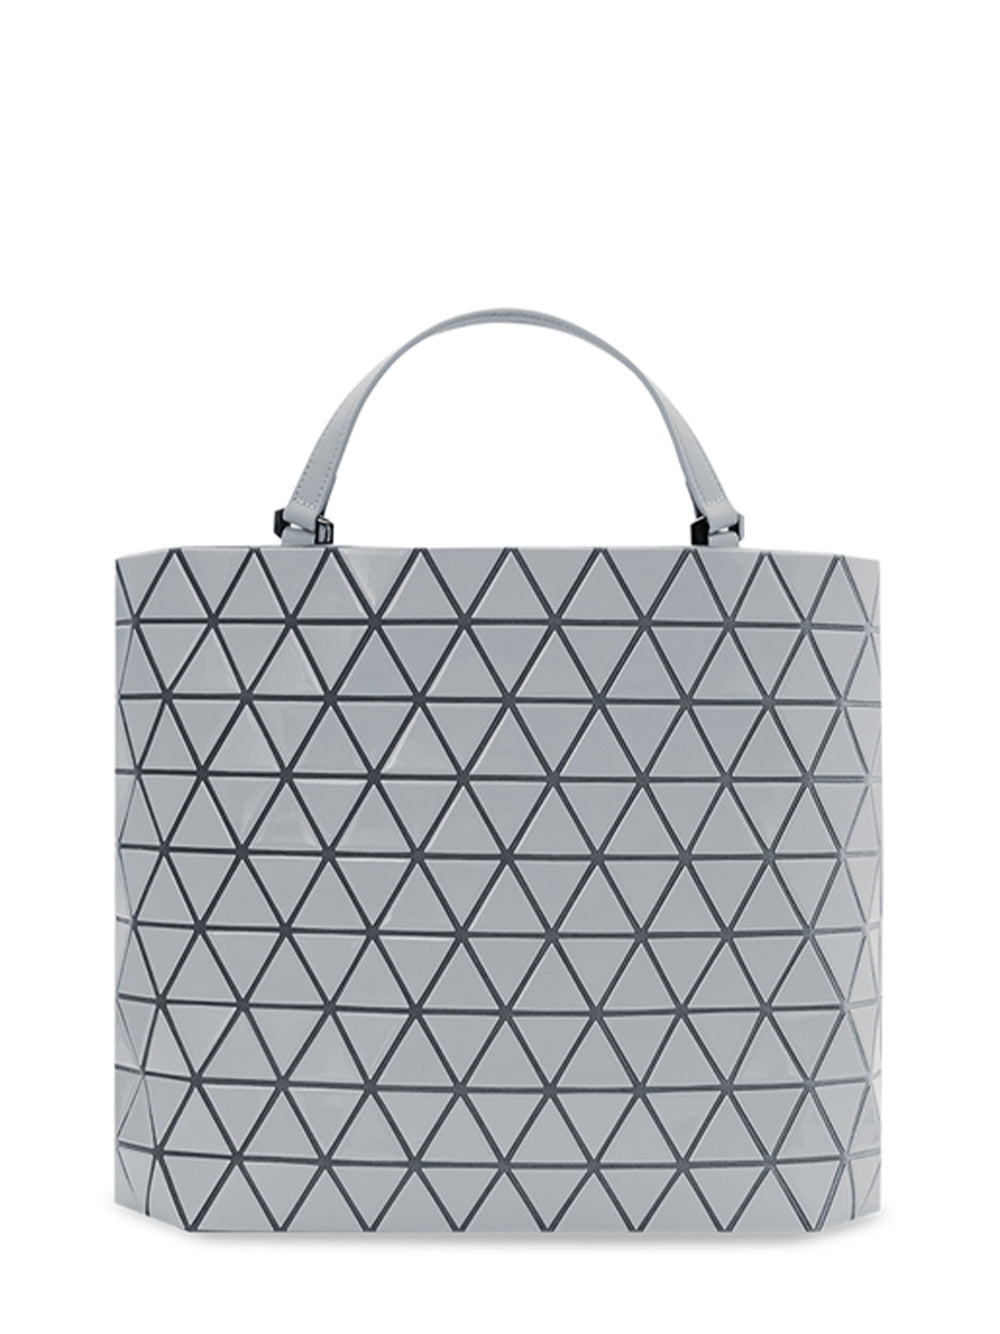 CRYSTAL GLOSS Handbag (Small) (Light Gray)